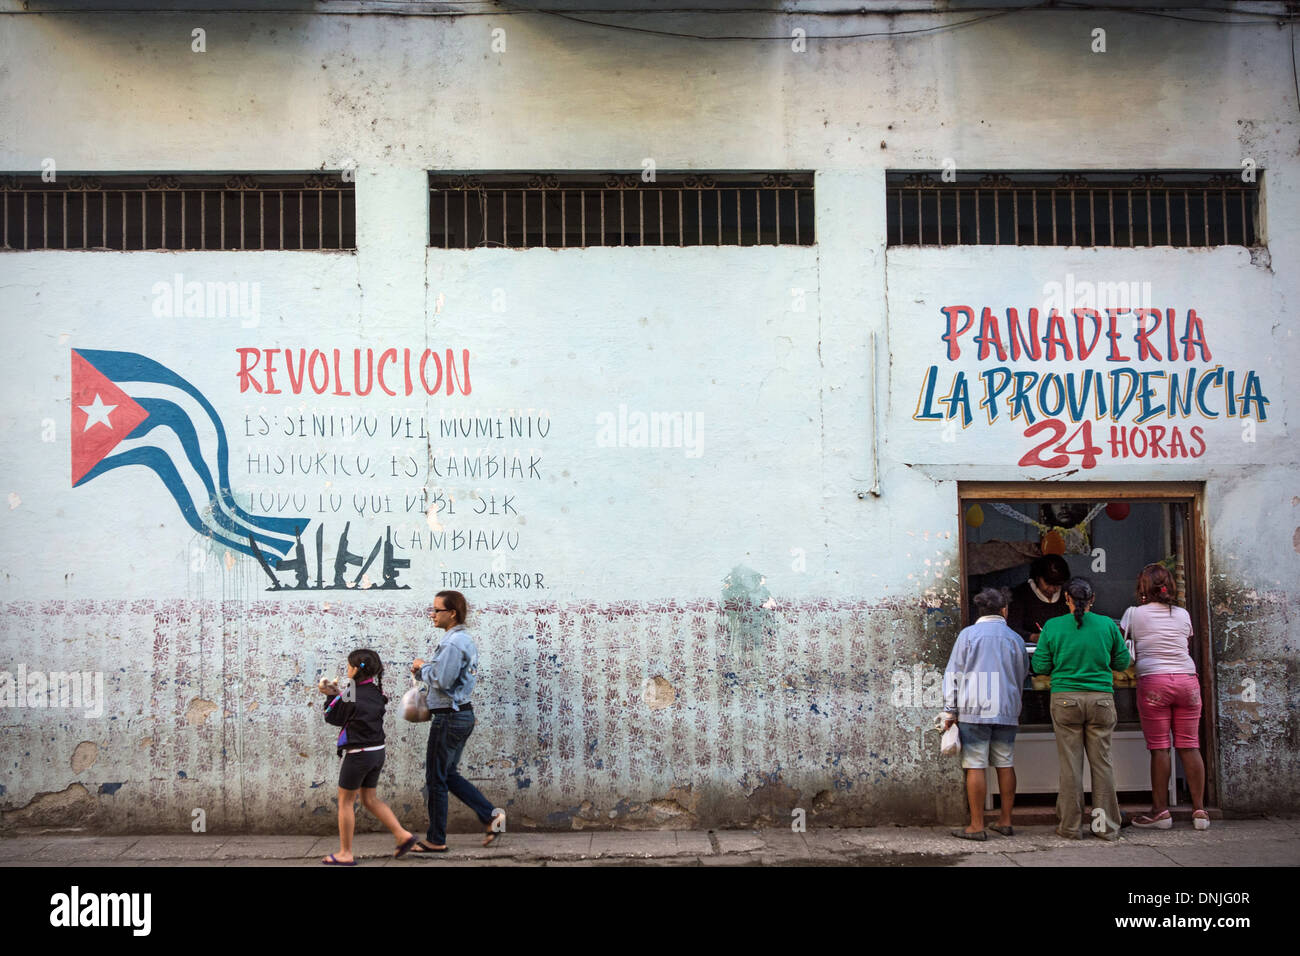 GRAFFITI politici circa la Rivoluzione cubana (revolucion) sulla parete di una PANADERIA, membro panetteria accetta Tessere di razionamento, scene di strada e la vita quotidiana, l'Avana, Cuba, CARAIBI Foto Stock